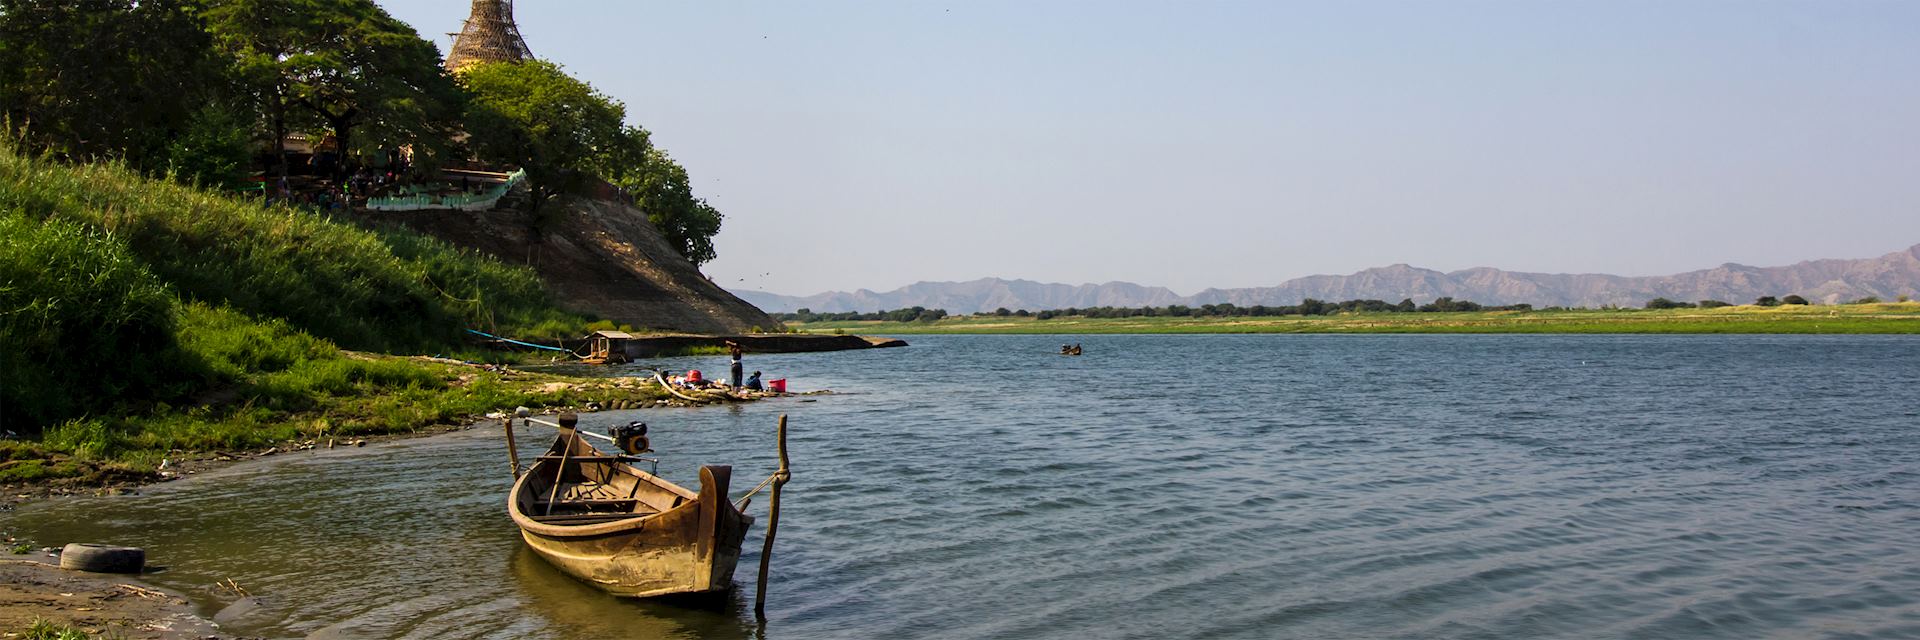 Ayeyarwady River, Bagan